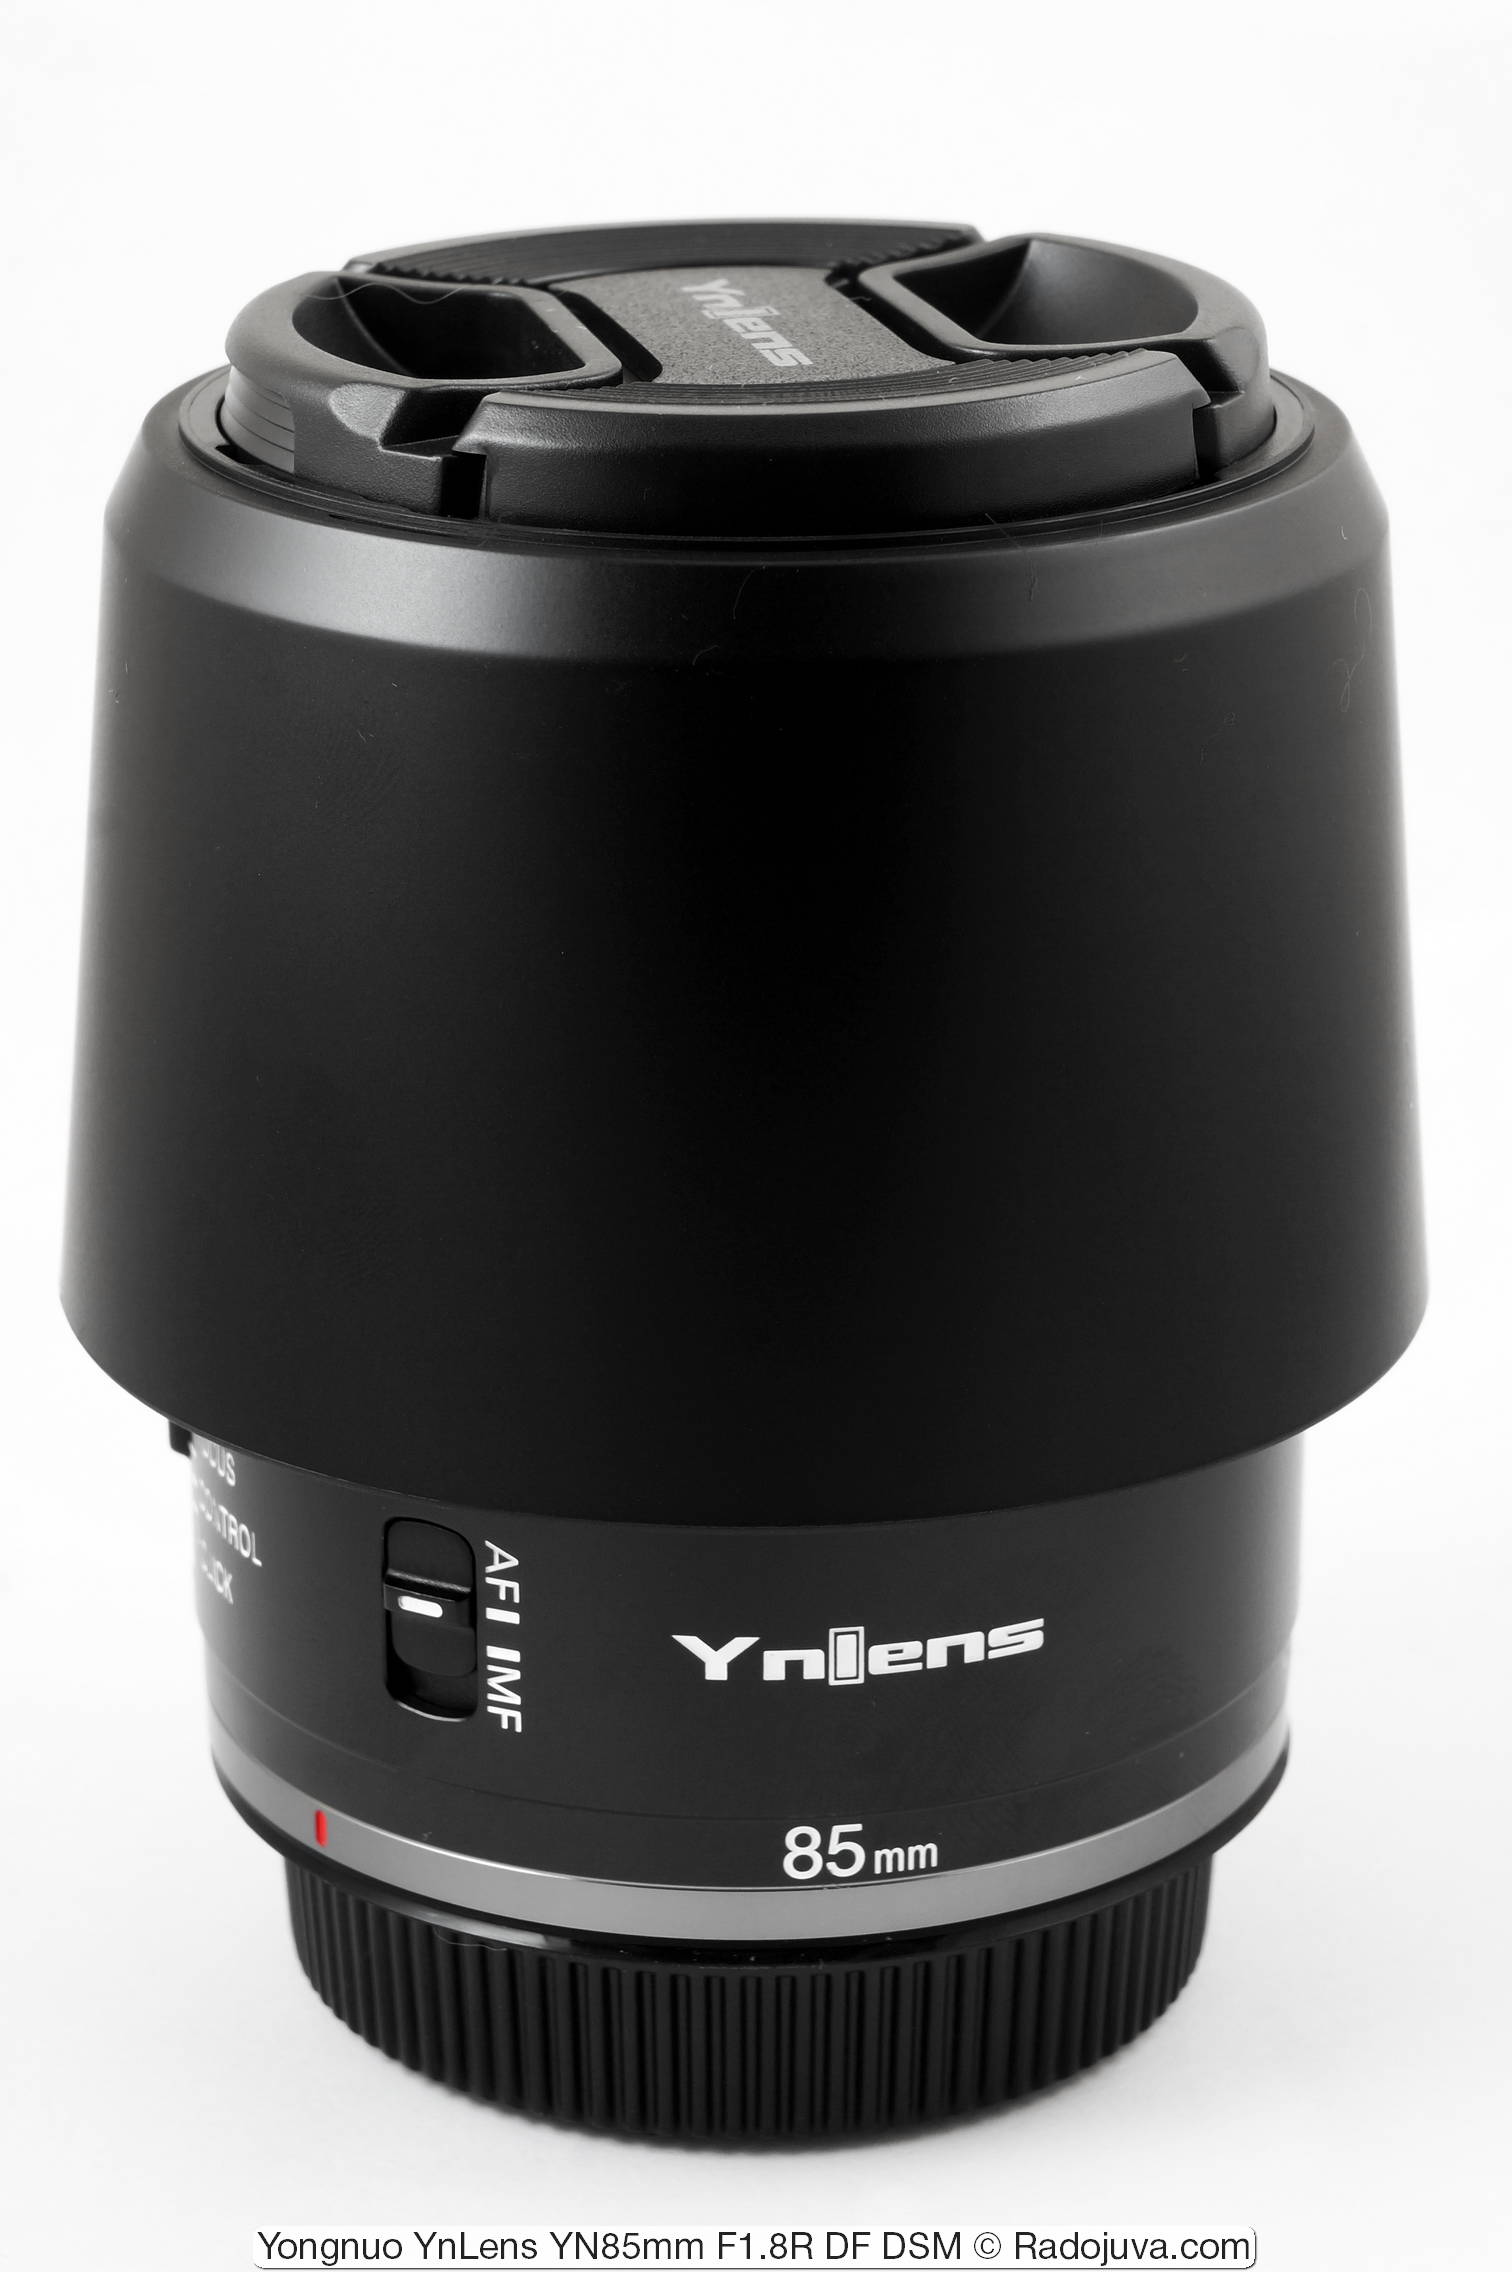 Yongnuo YnLens YN85mm F1.8R DF DSM (для Canon RF)